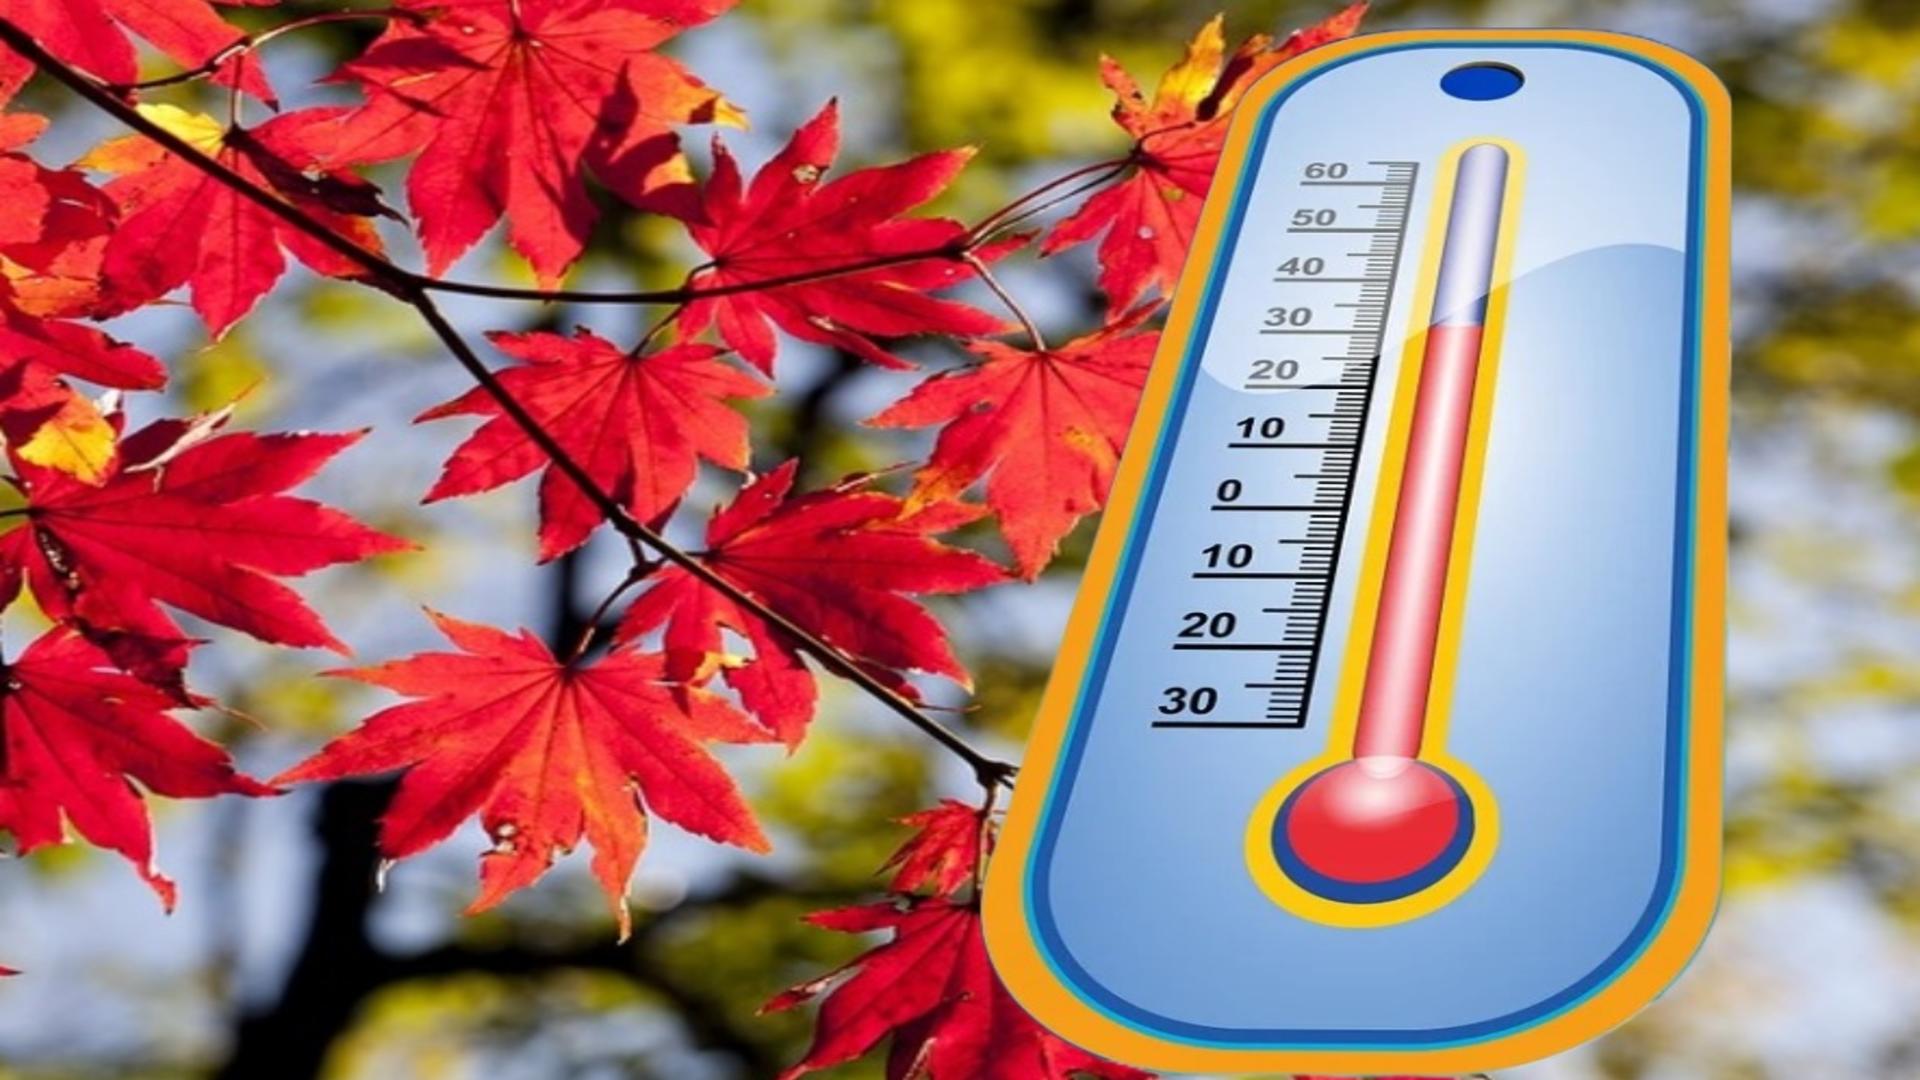 Canicula de toamnă - climatolog român, avertisment dur pentru populație: recorduri de temperatură 